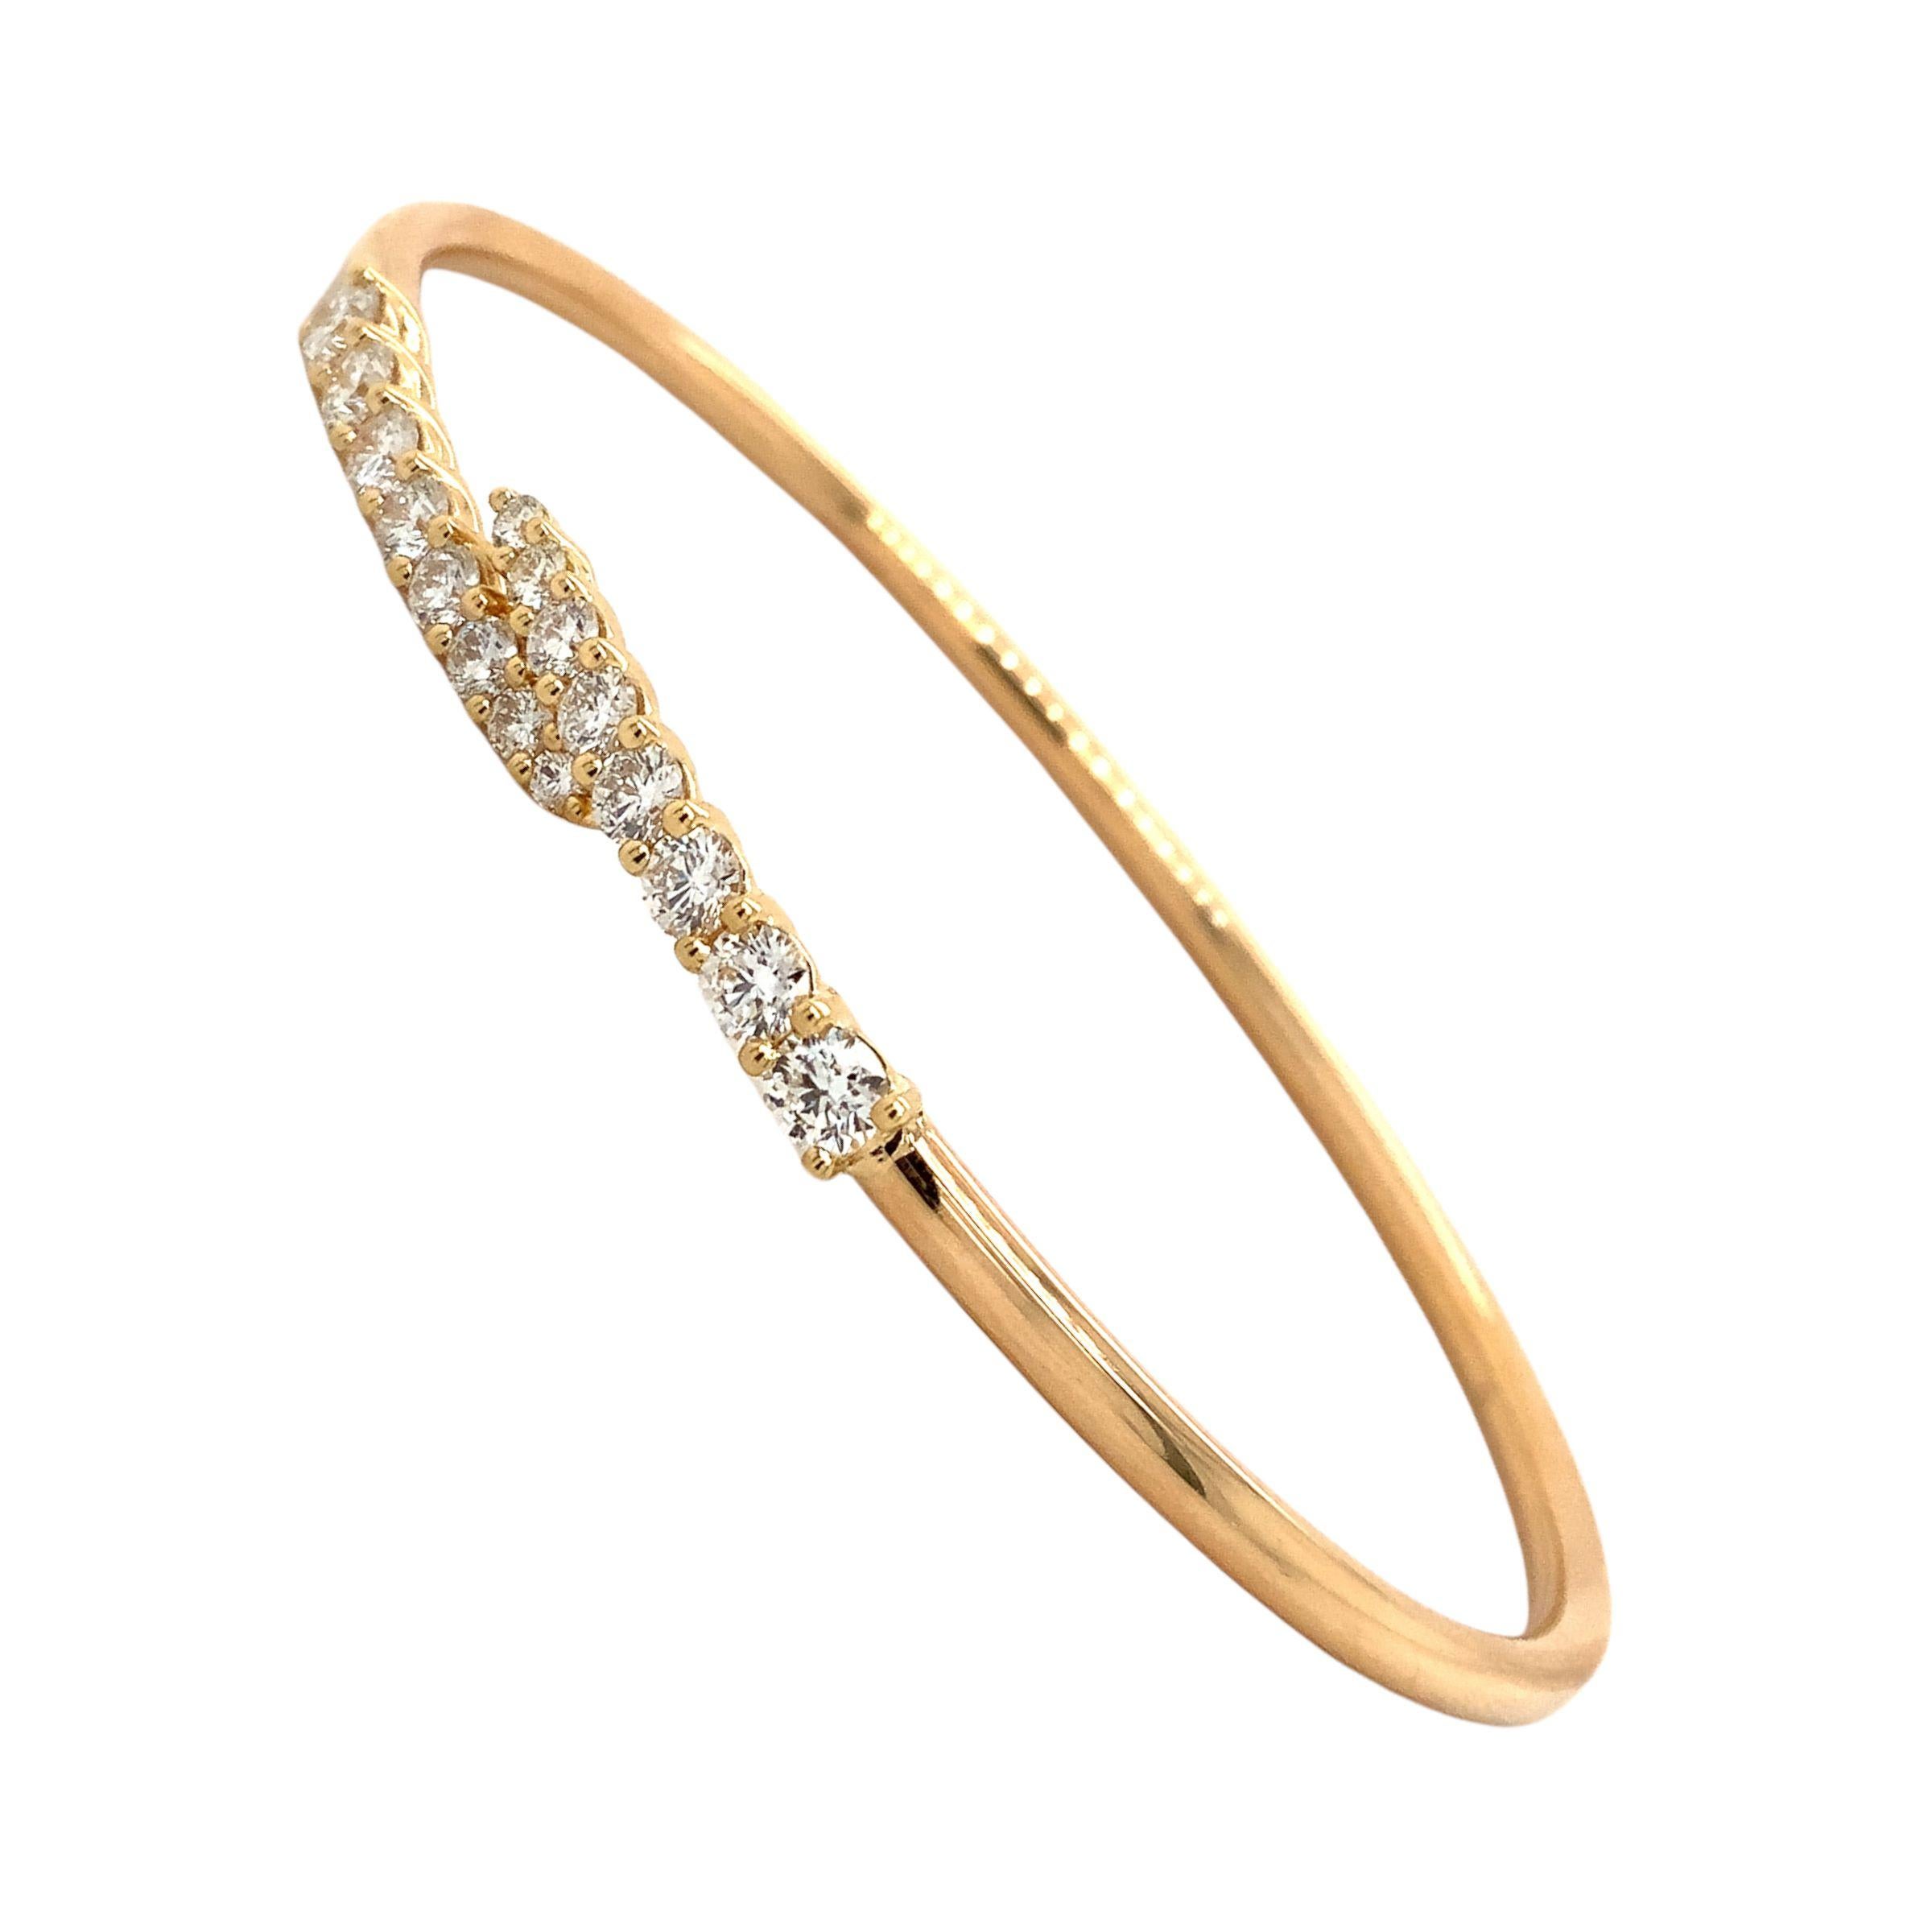 Ce bracelet en or blanc 18 carats Memoire Identity Collection Flexi Diamond est orné de seize diamants ronds de taille brillante, de couleur F-G et de pureté VS, d'un poids total de 1,12 carat, pour un éclat remarquable et une qualité supérieure. Le